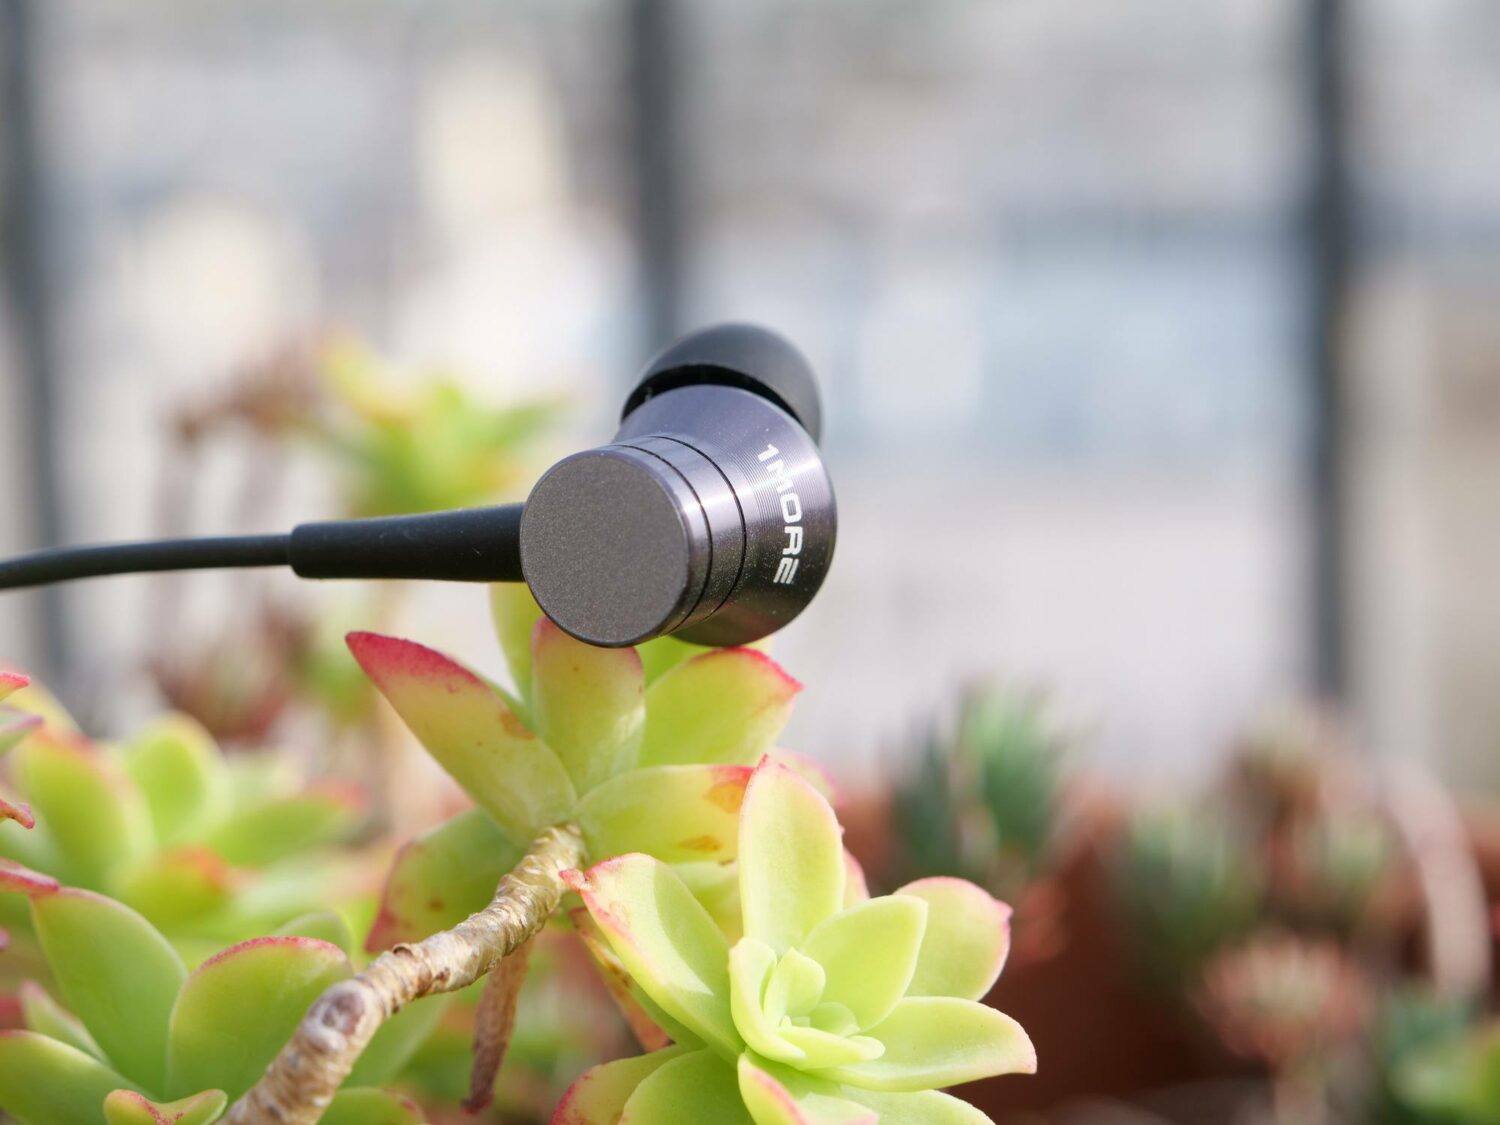 1More Piston Fit Bluetooth écouteur seul sur une plante